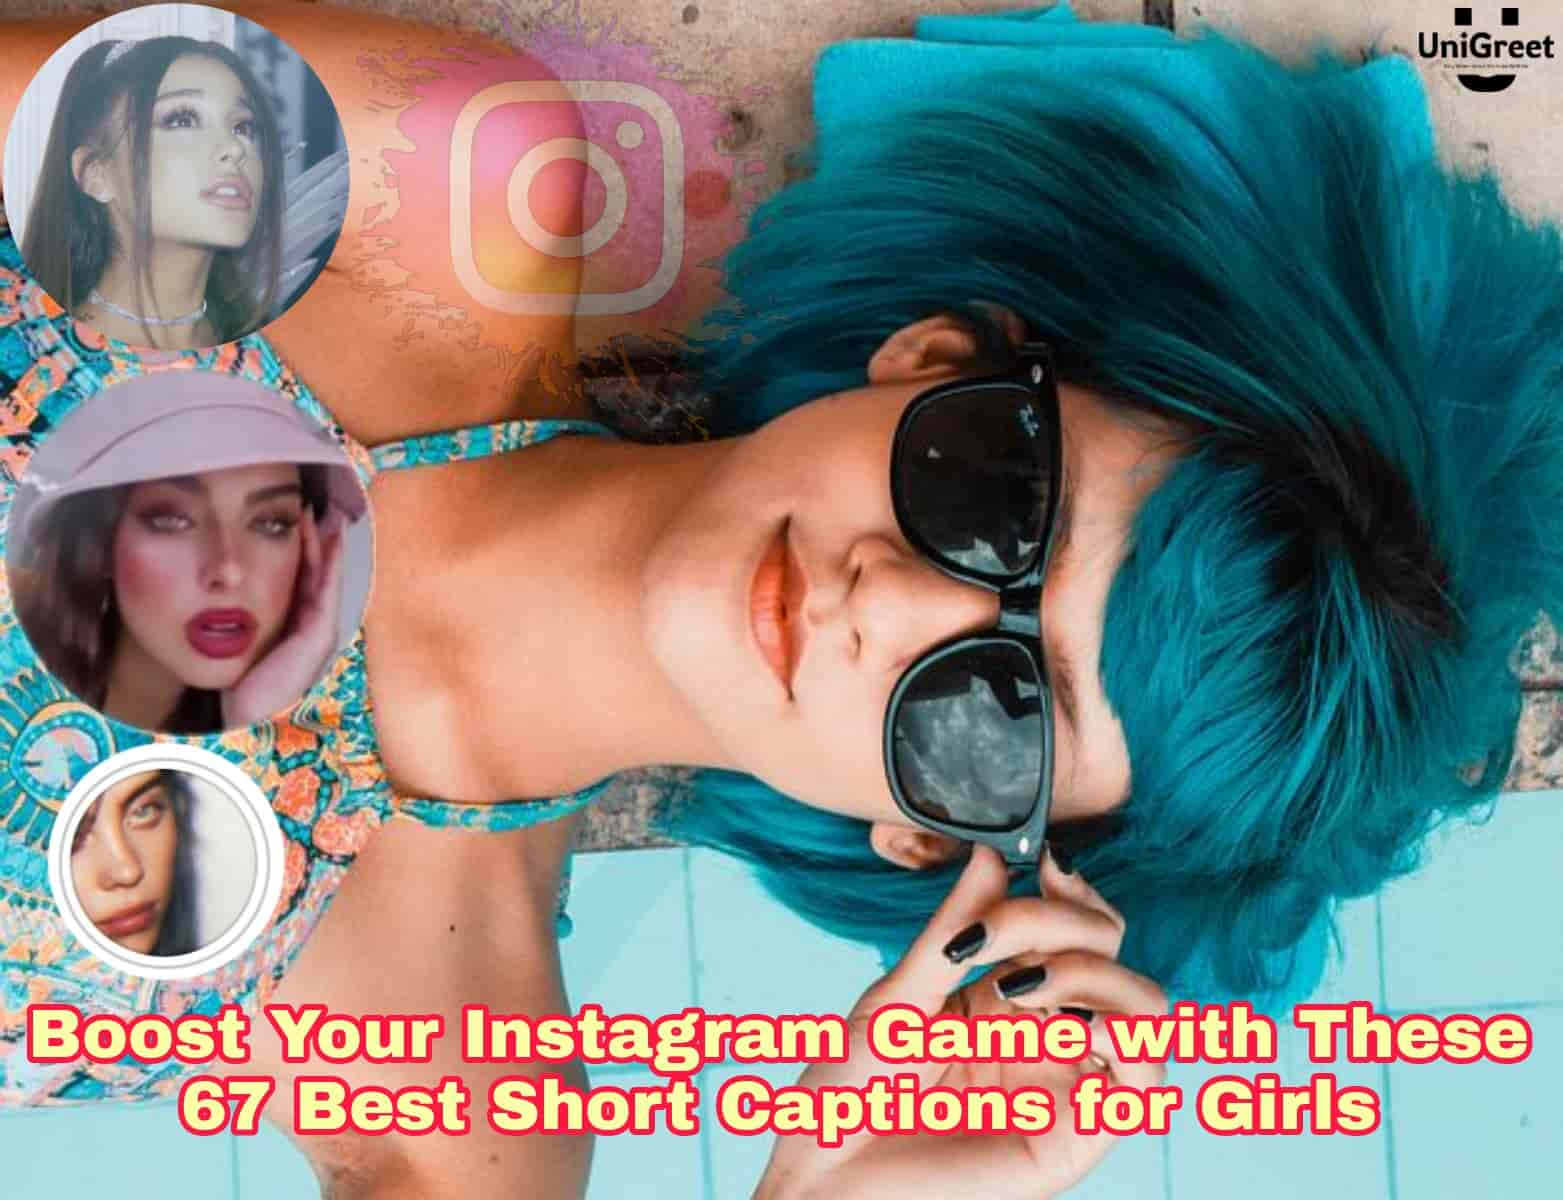 Short captions for Instagram for girl